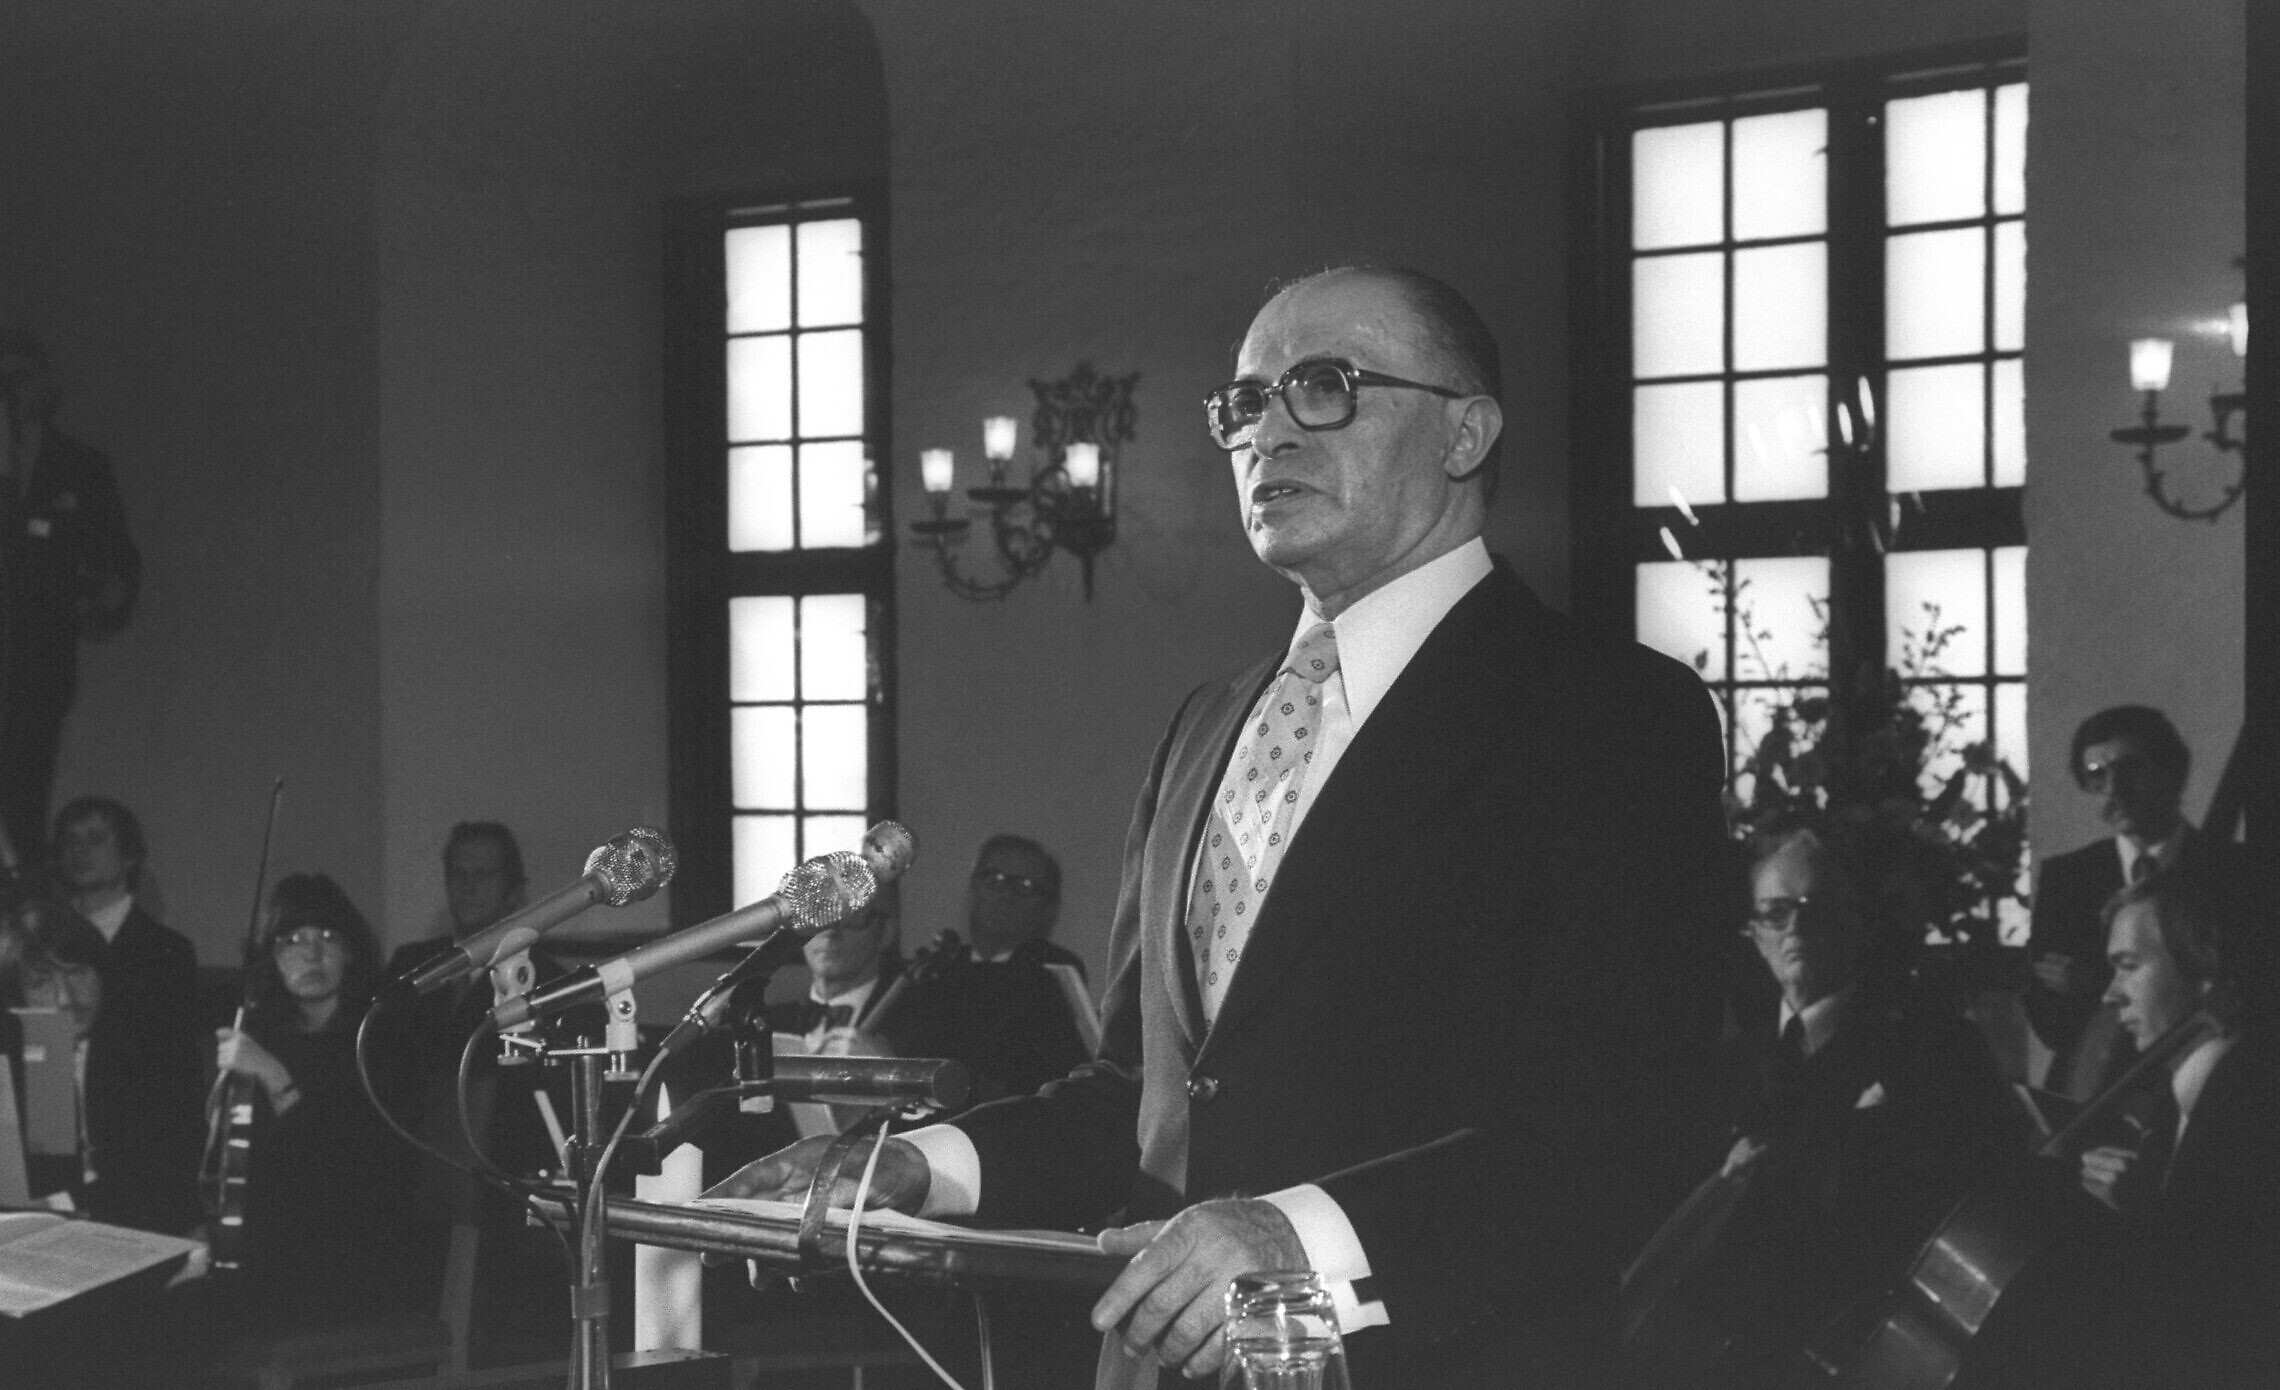 ראש הממשלה לשעבר מנחם בגין נושא דברים אחרי שהוענק לו פרס נובל, אוסלו, 1978 (צילום: MILNER MOSHE, לע"מ)